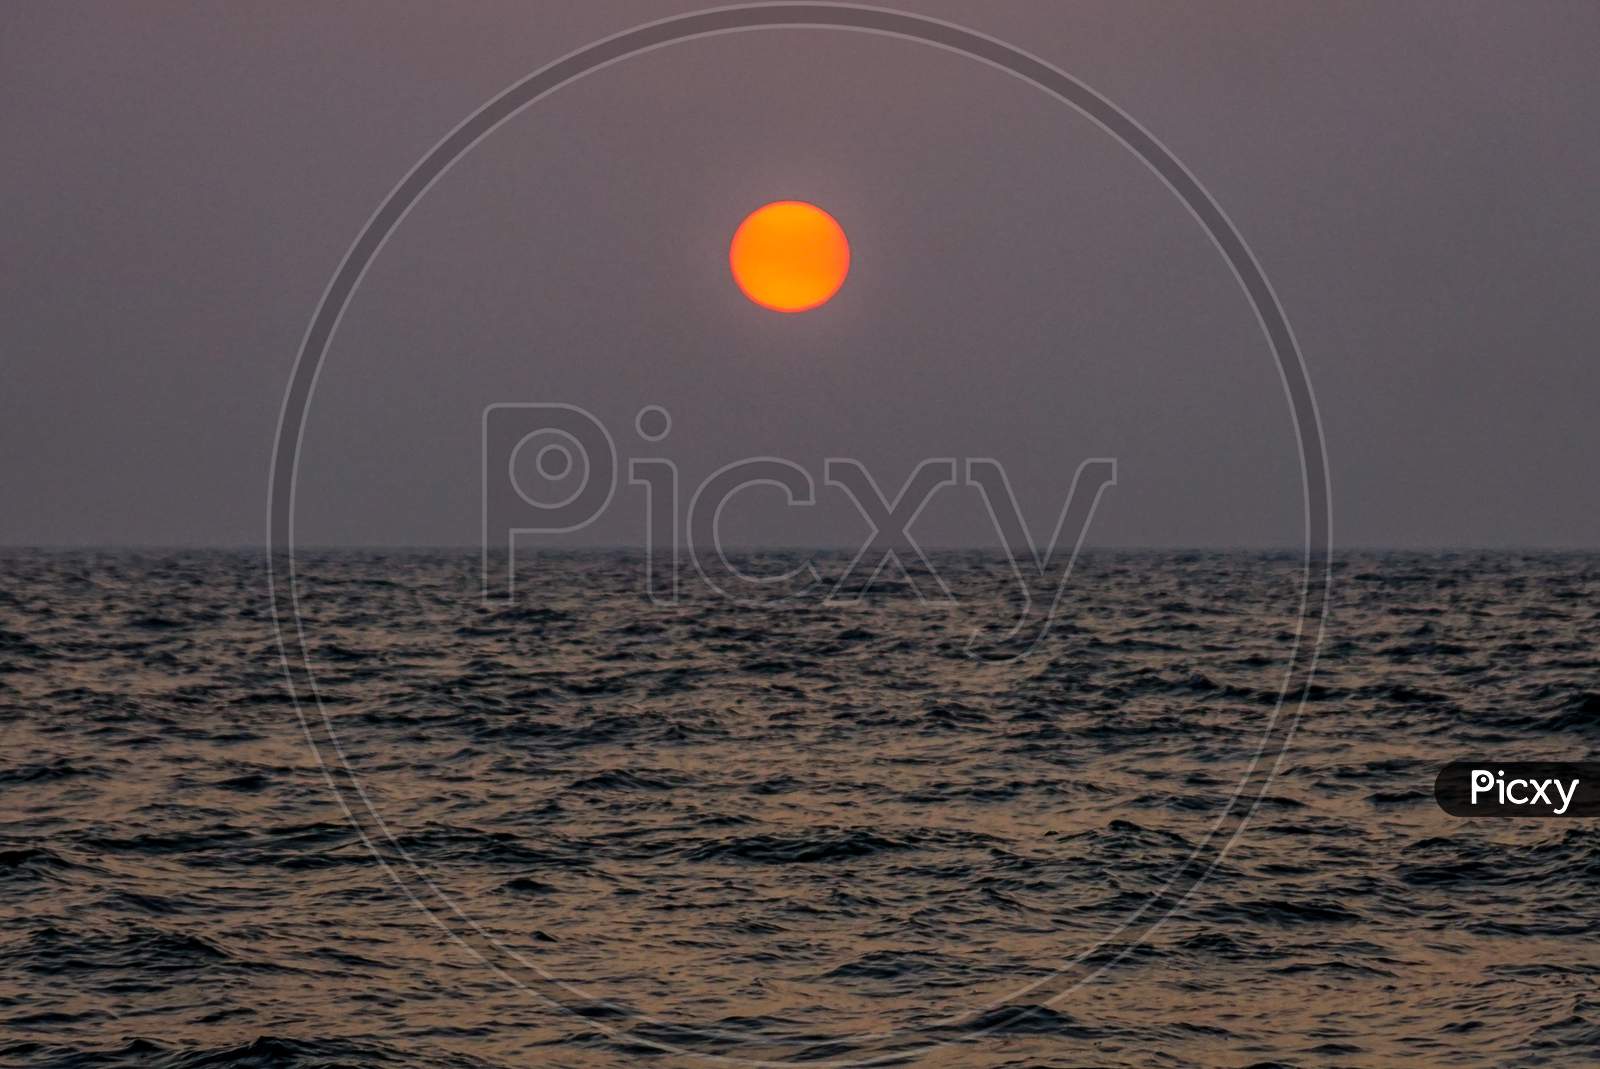 A Sunset by the Goa beach